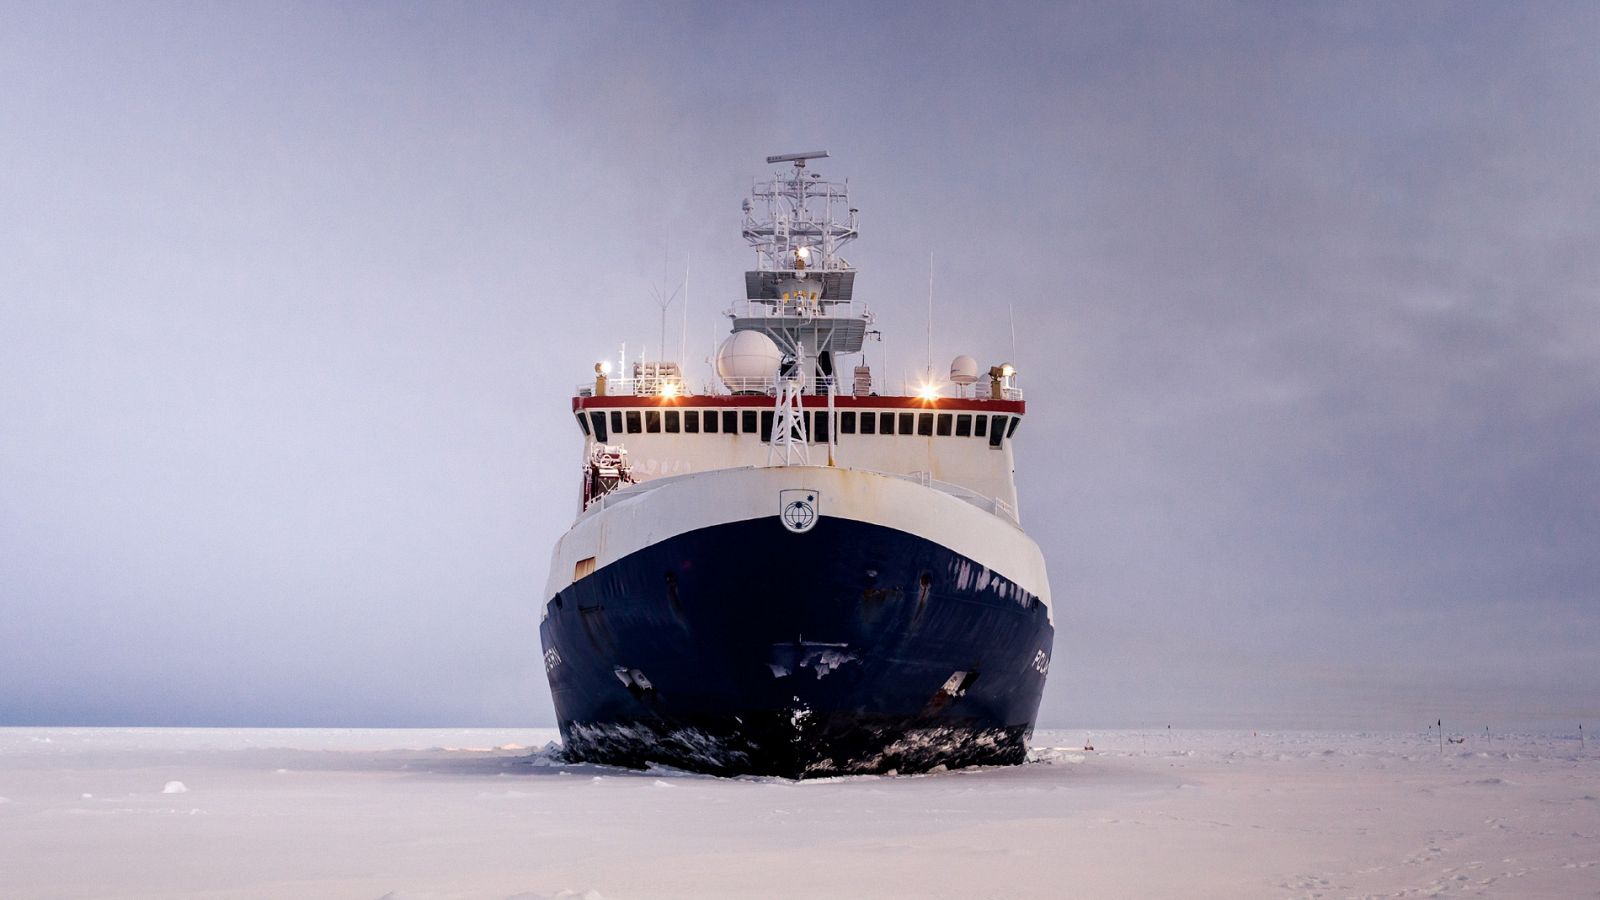 La misión MOSAIC pasará un año en el Ártico para mejorar el conocimiento sobre el cambio climático